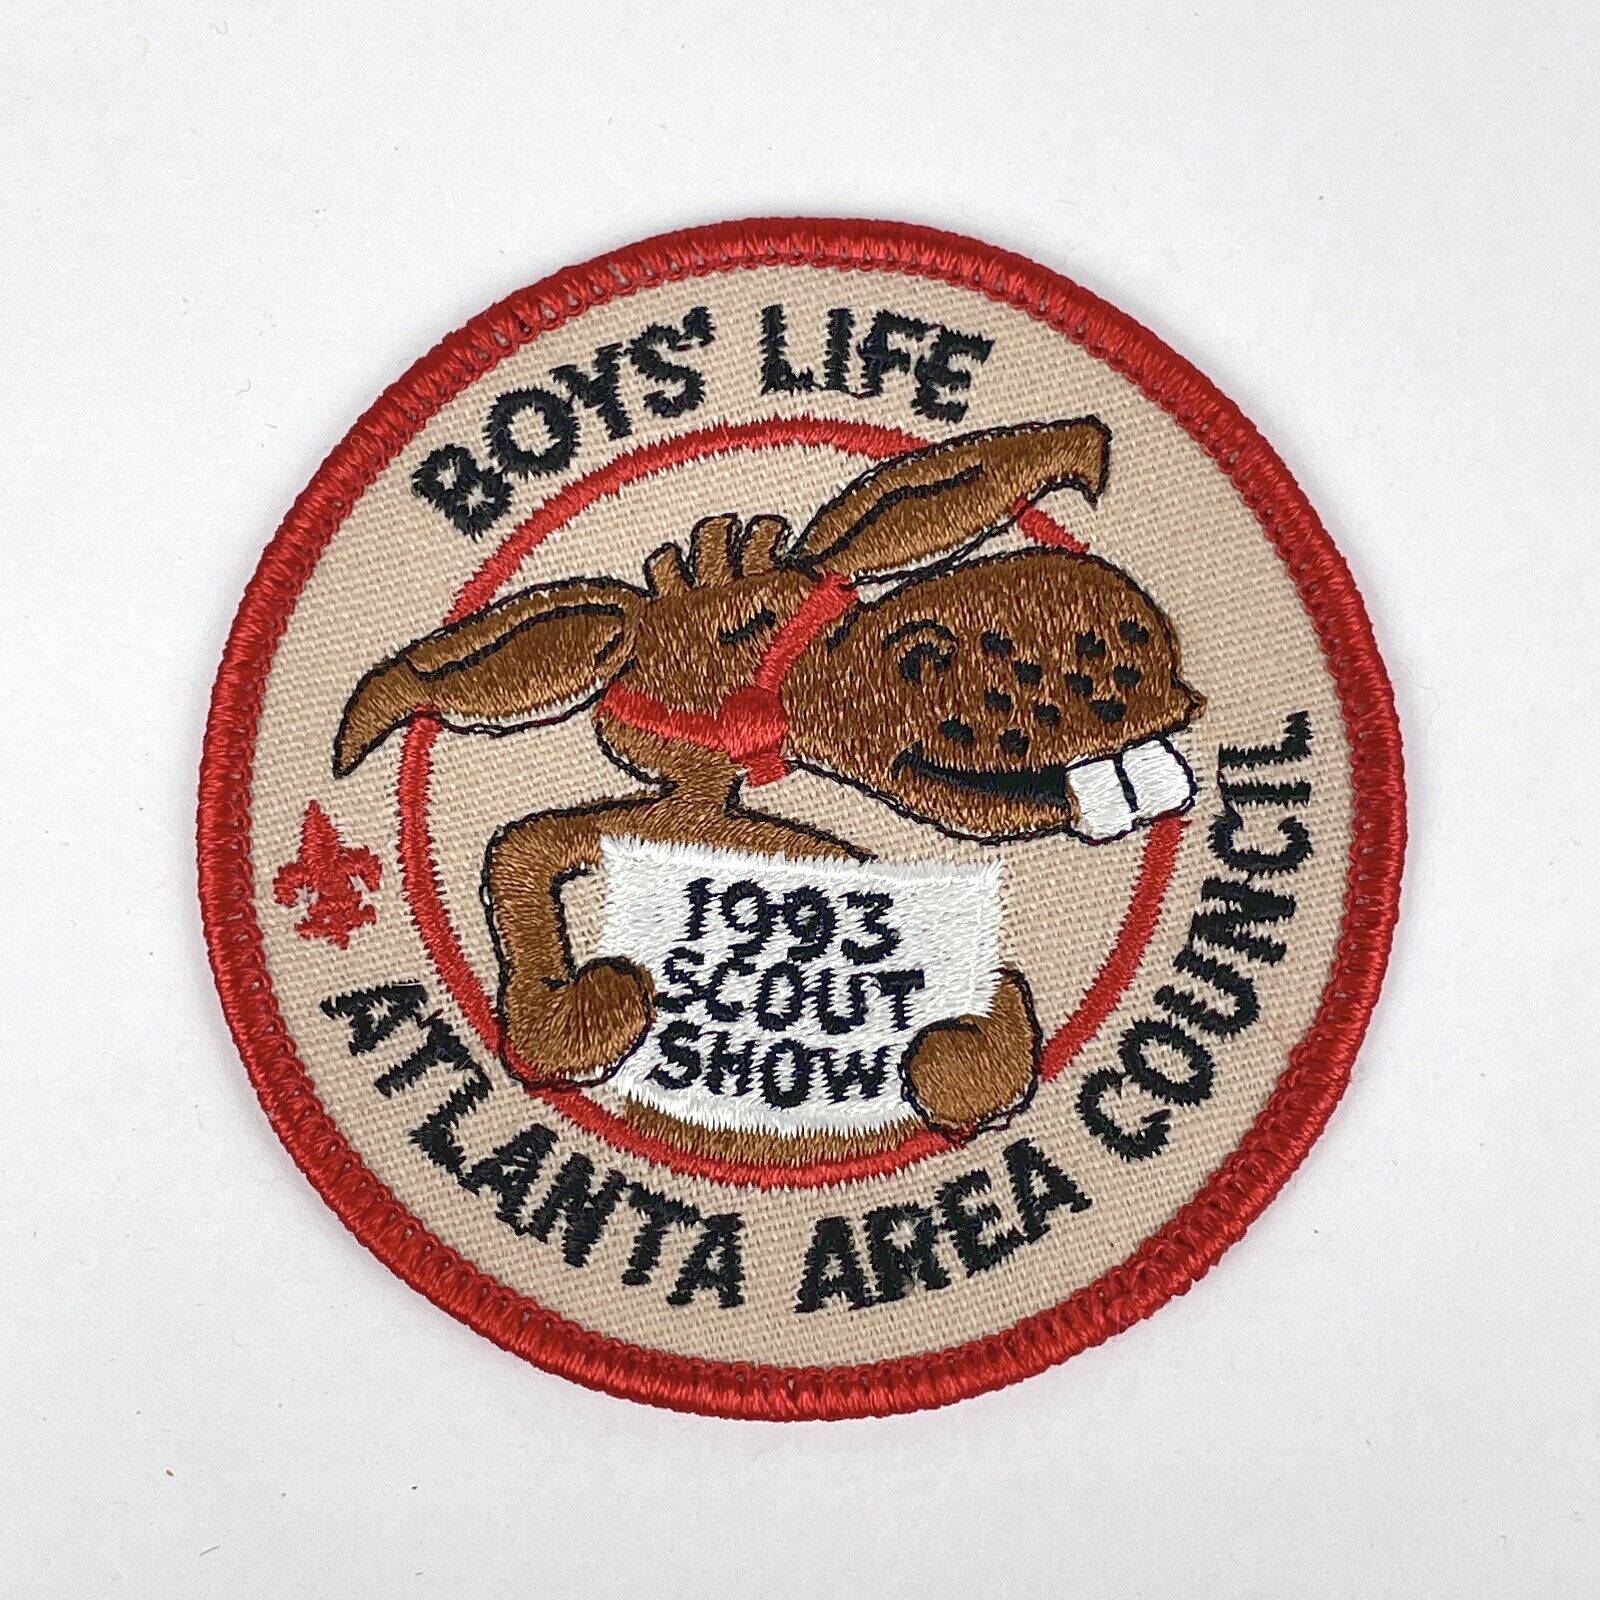 VTG Boy Scouts BSA Atlanta Area Council 1993 Scout Show Boys\' Life Patch